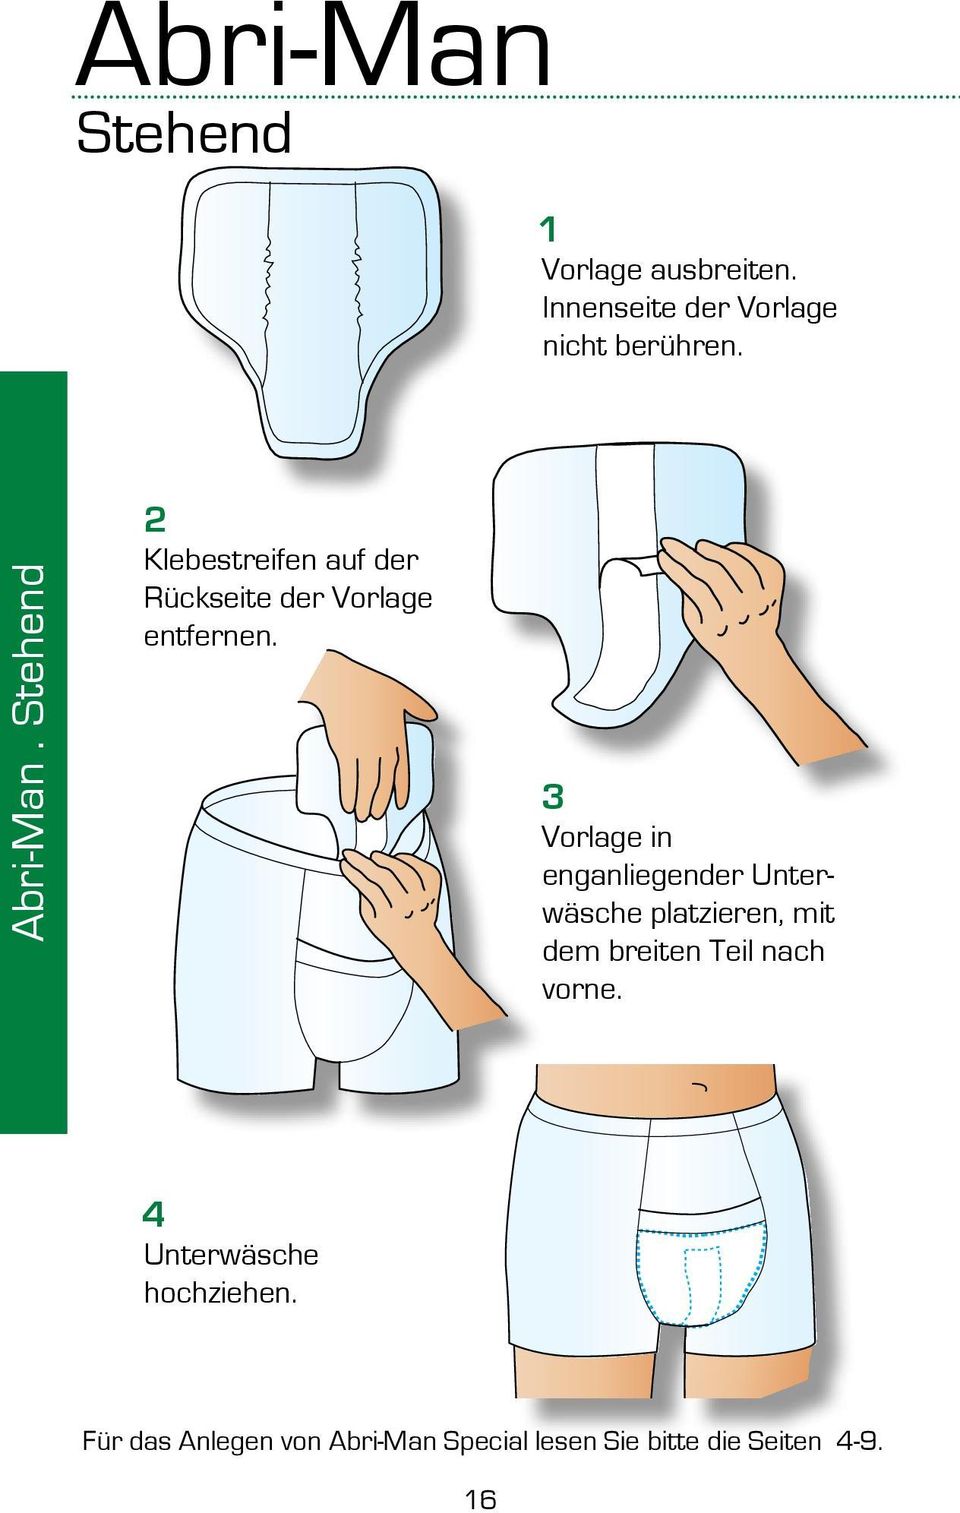 Vorlage in enganliegender Unterwäsche platzieren, mit dem breiten Teil nach vorne.